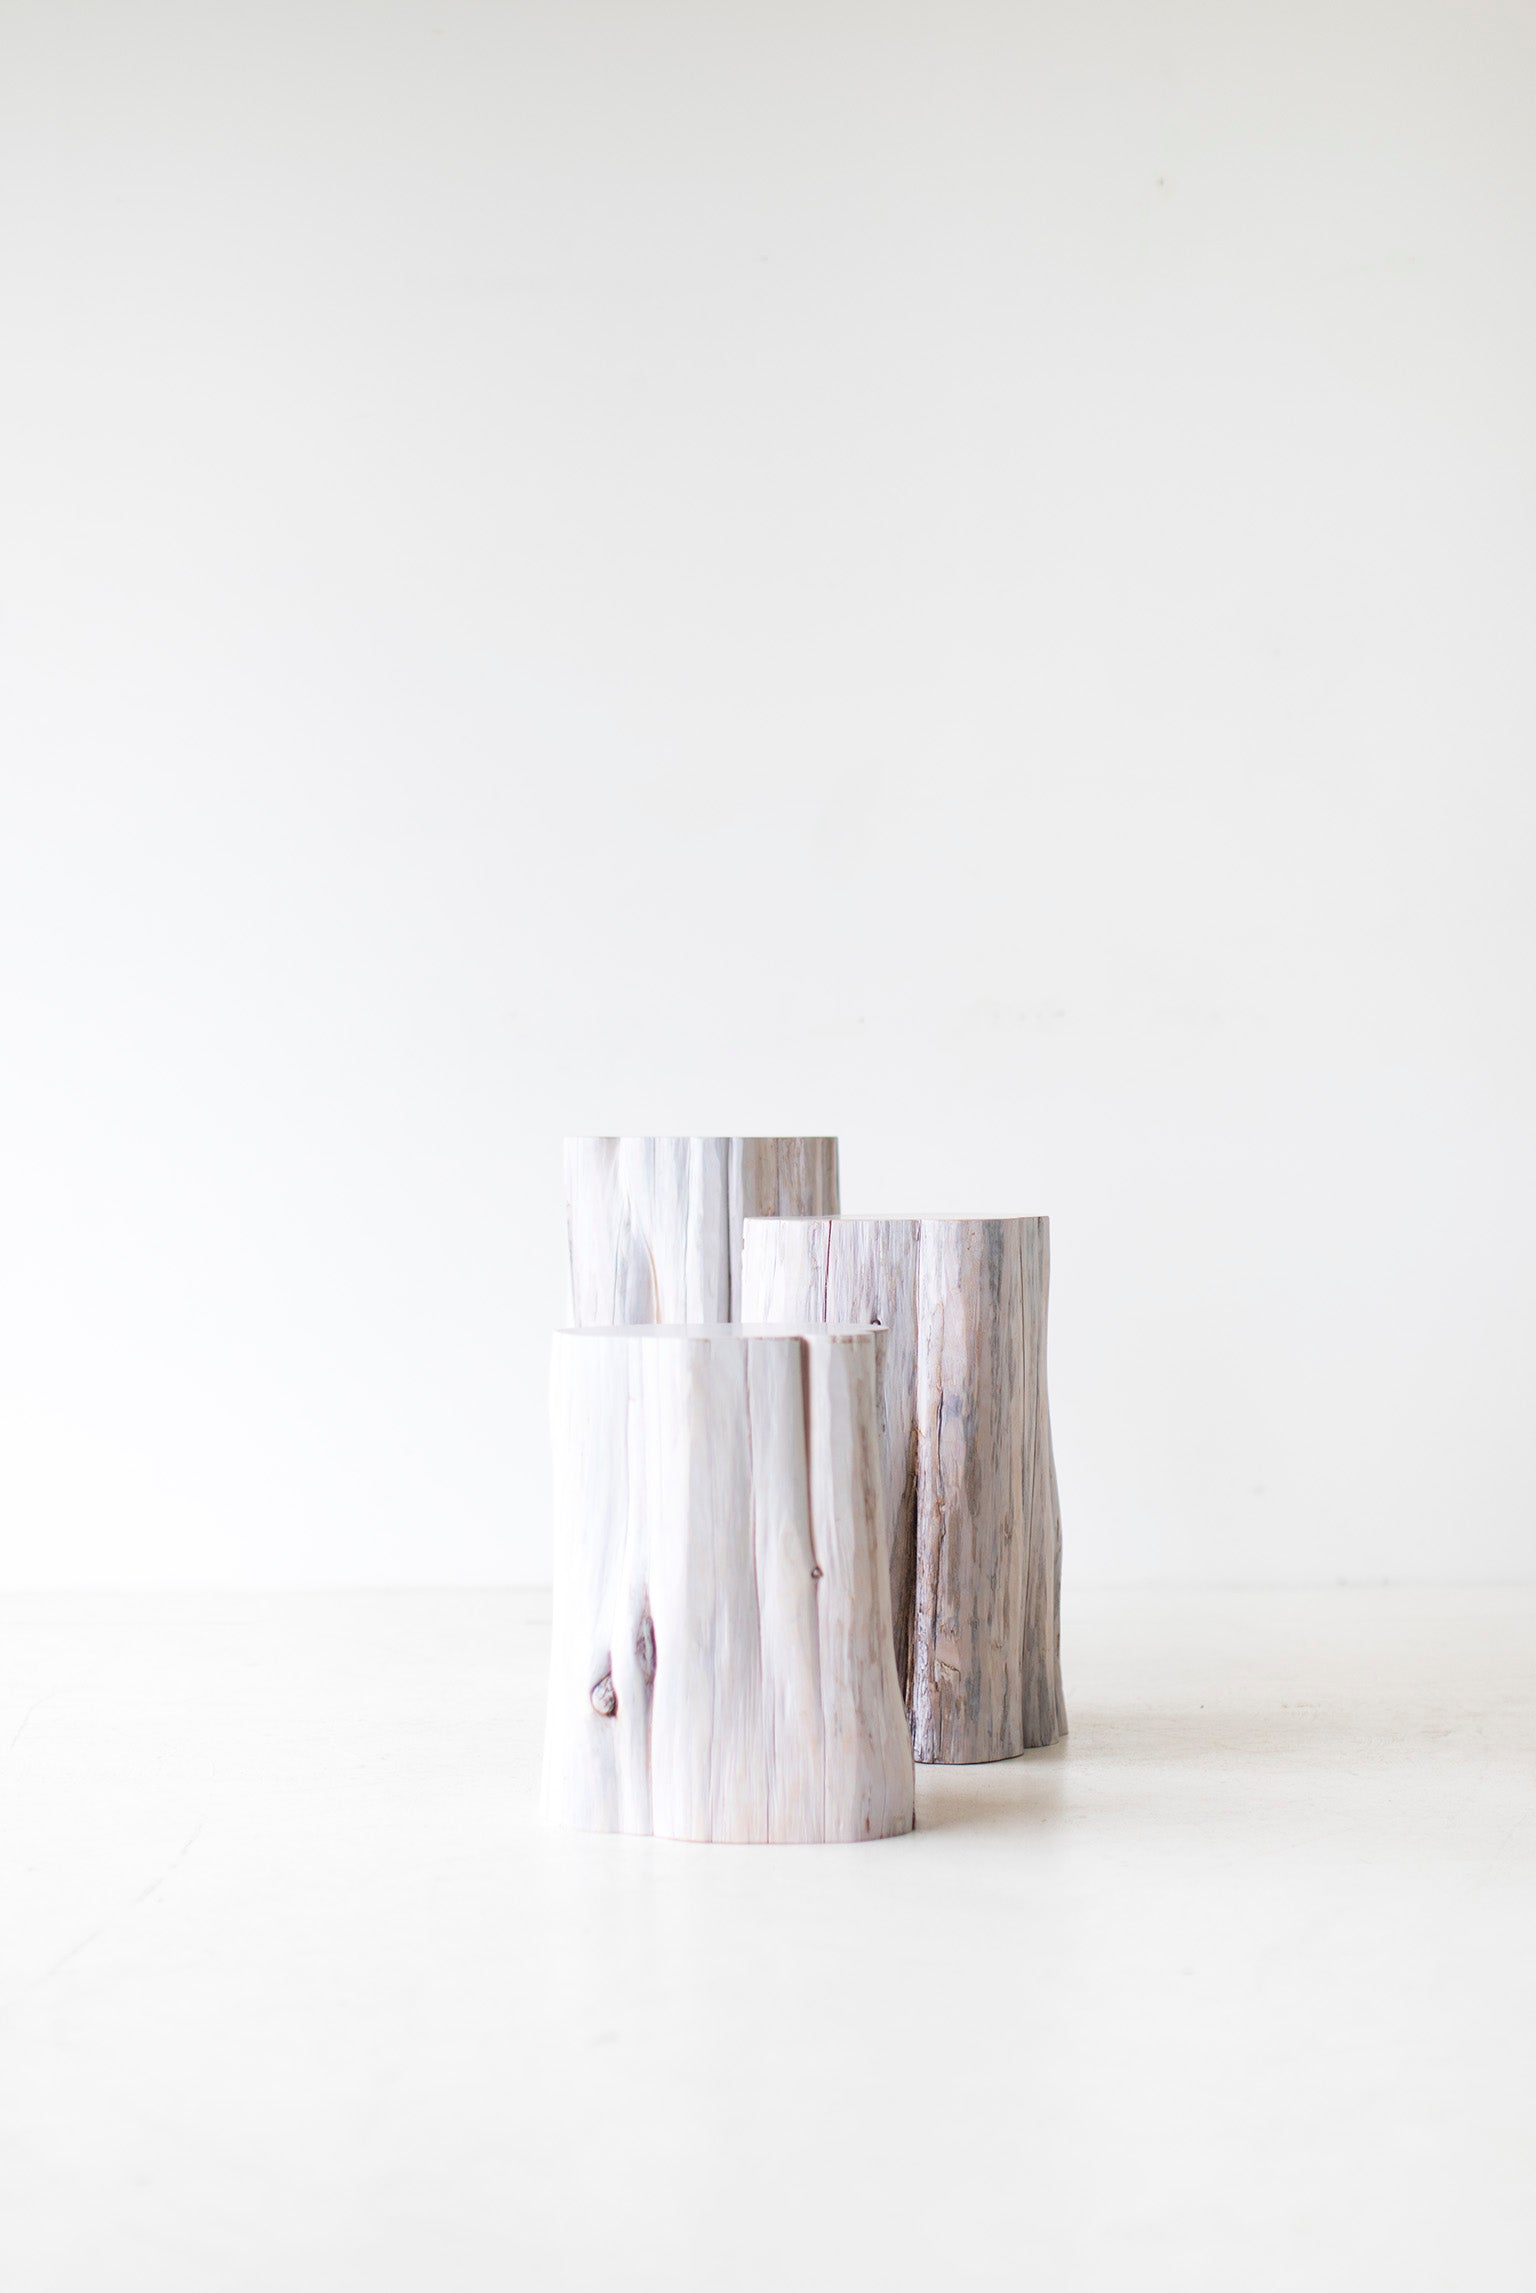 Tree Stump Table - 0917